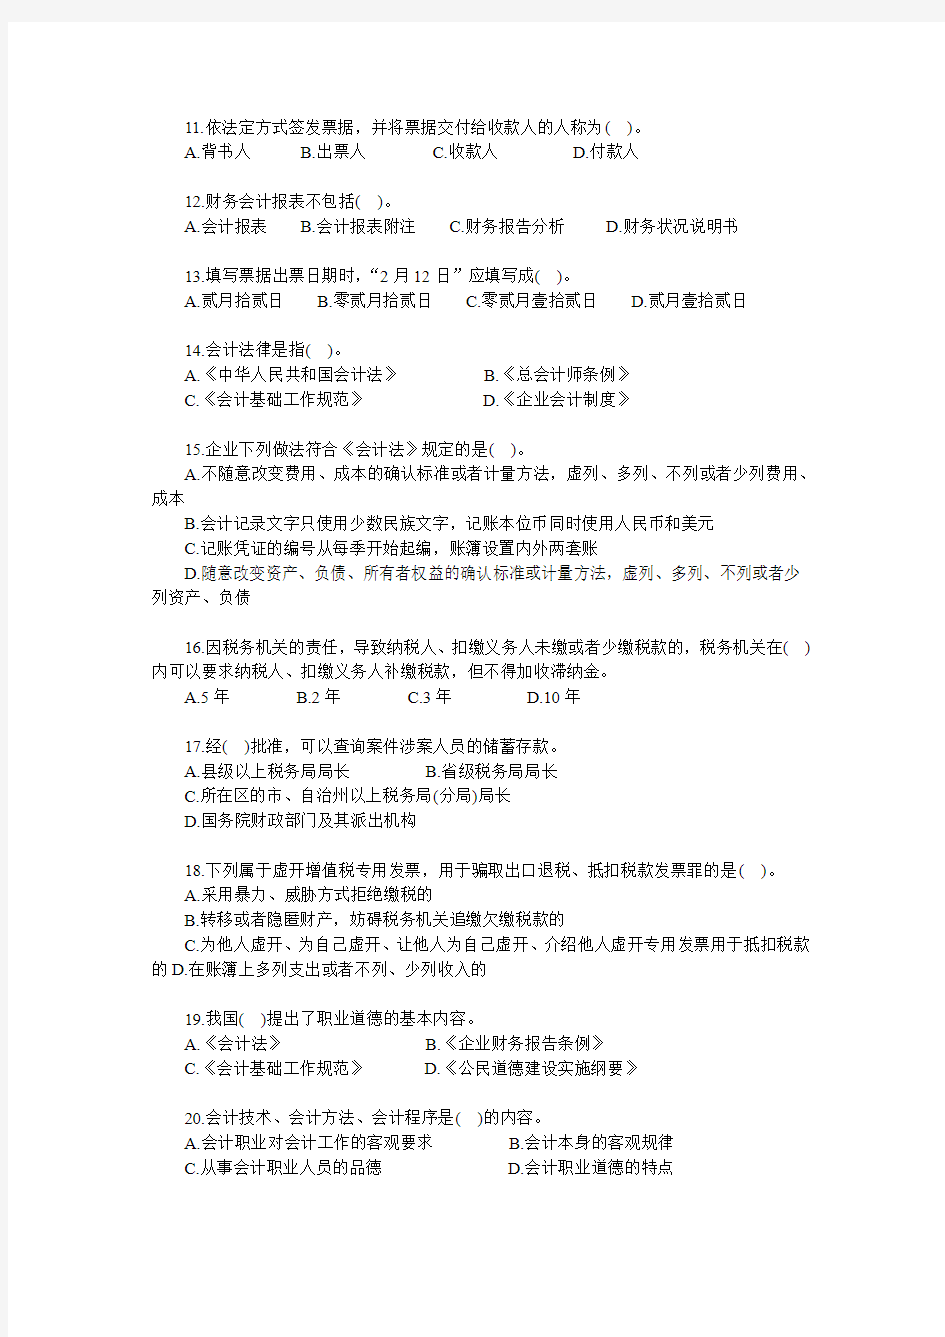 江苏2014年会计从业考试《财经法规》密卷(一)